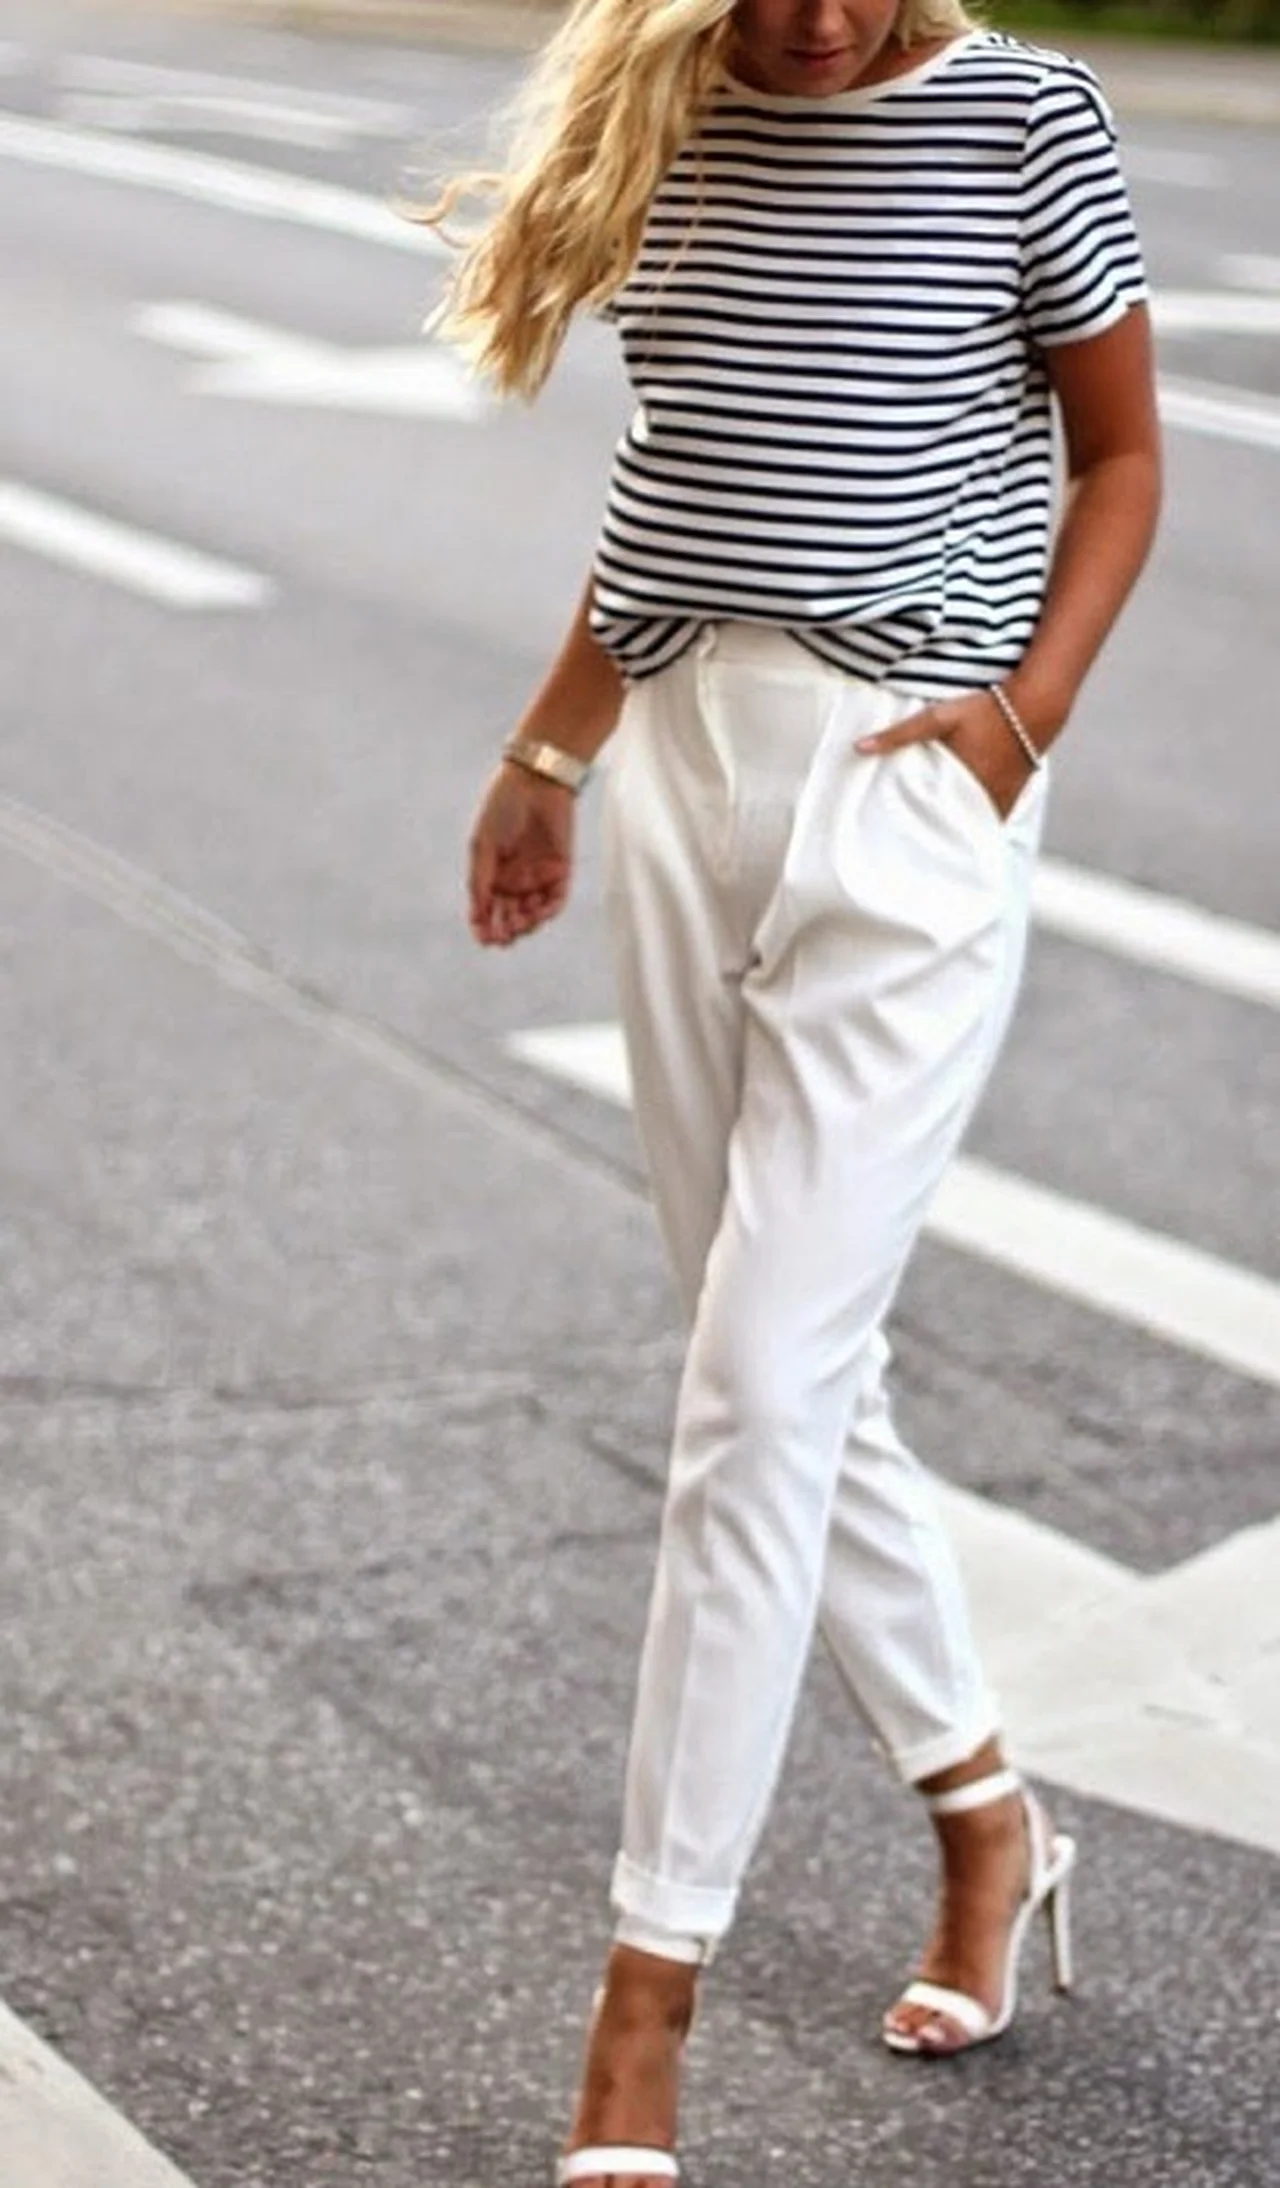 Białe eleganckie spodnie połączone z pasiastą koszulką